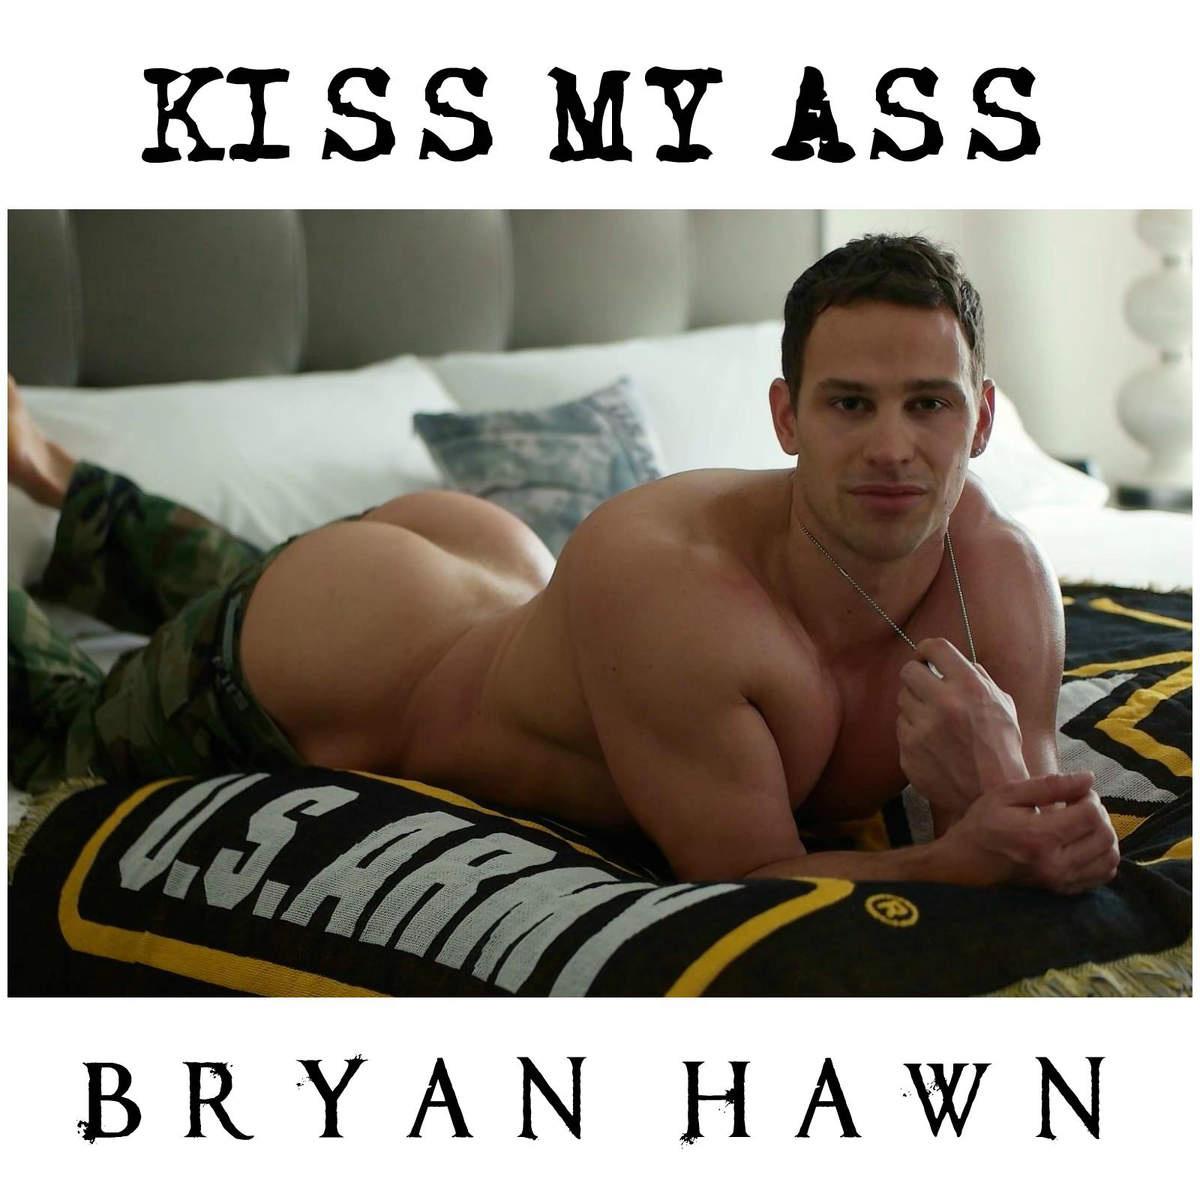 Bryan hawn onlyfans